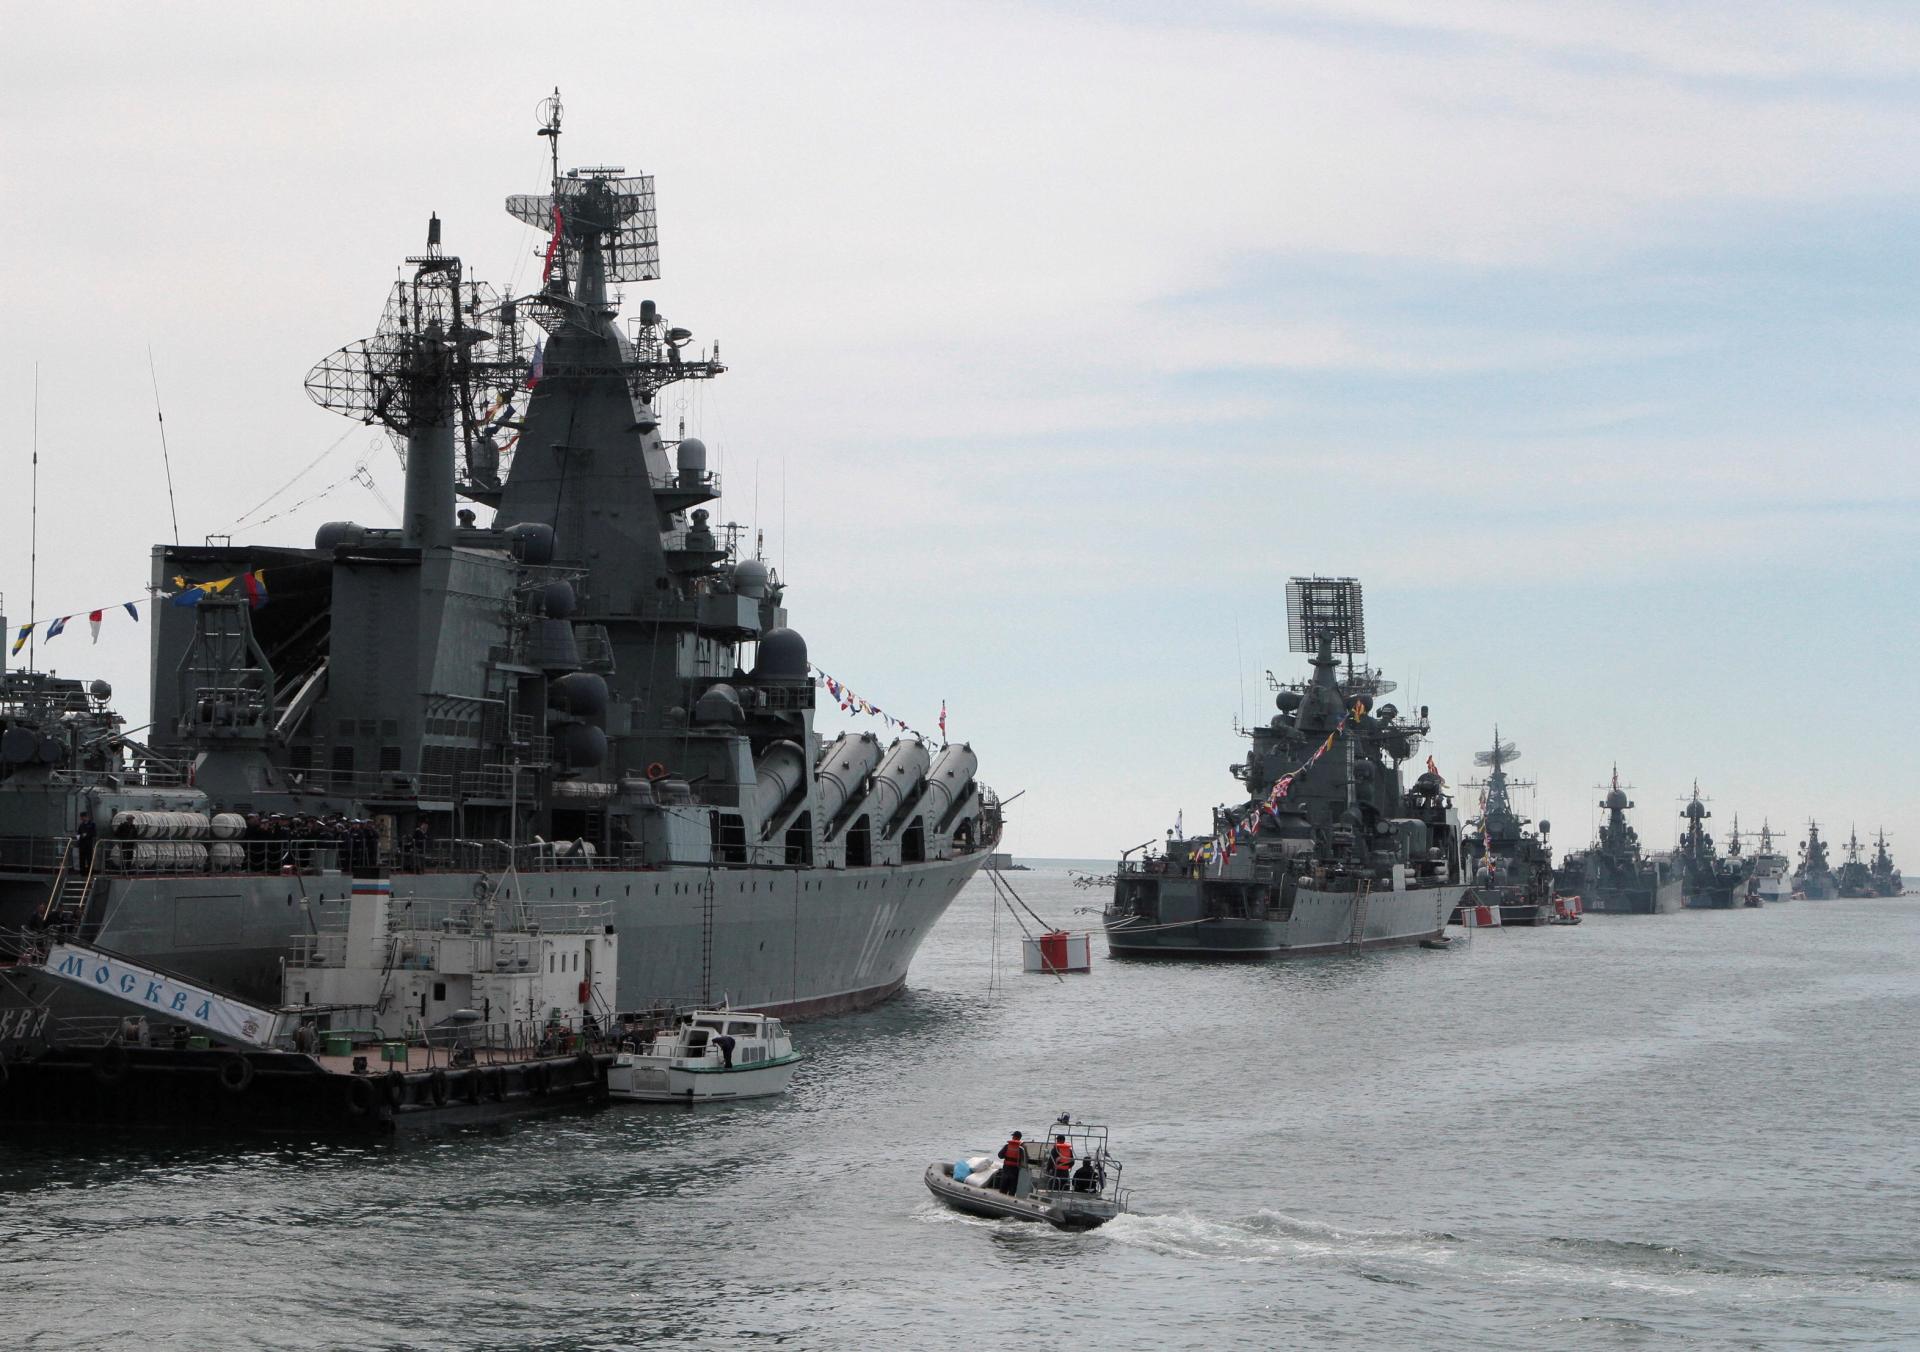 Ukrajina podnikla raketový útok na ruské lode a kasárne